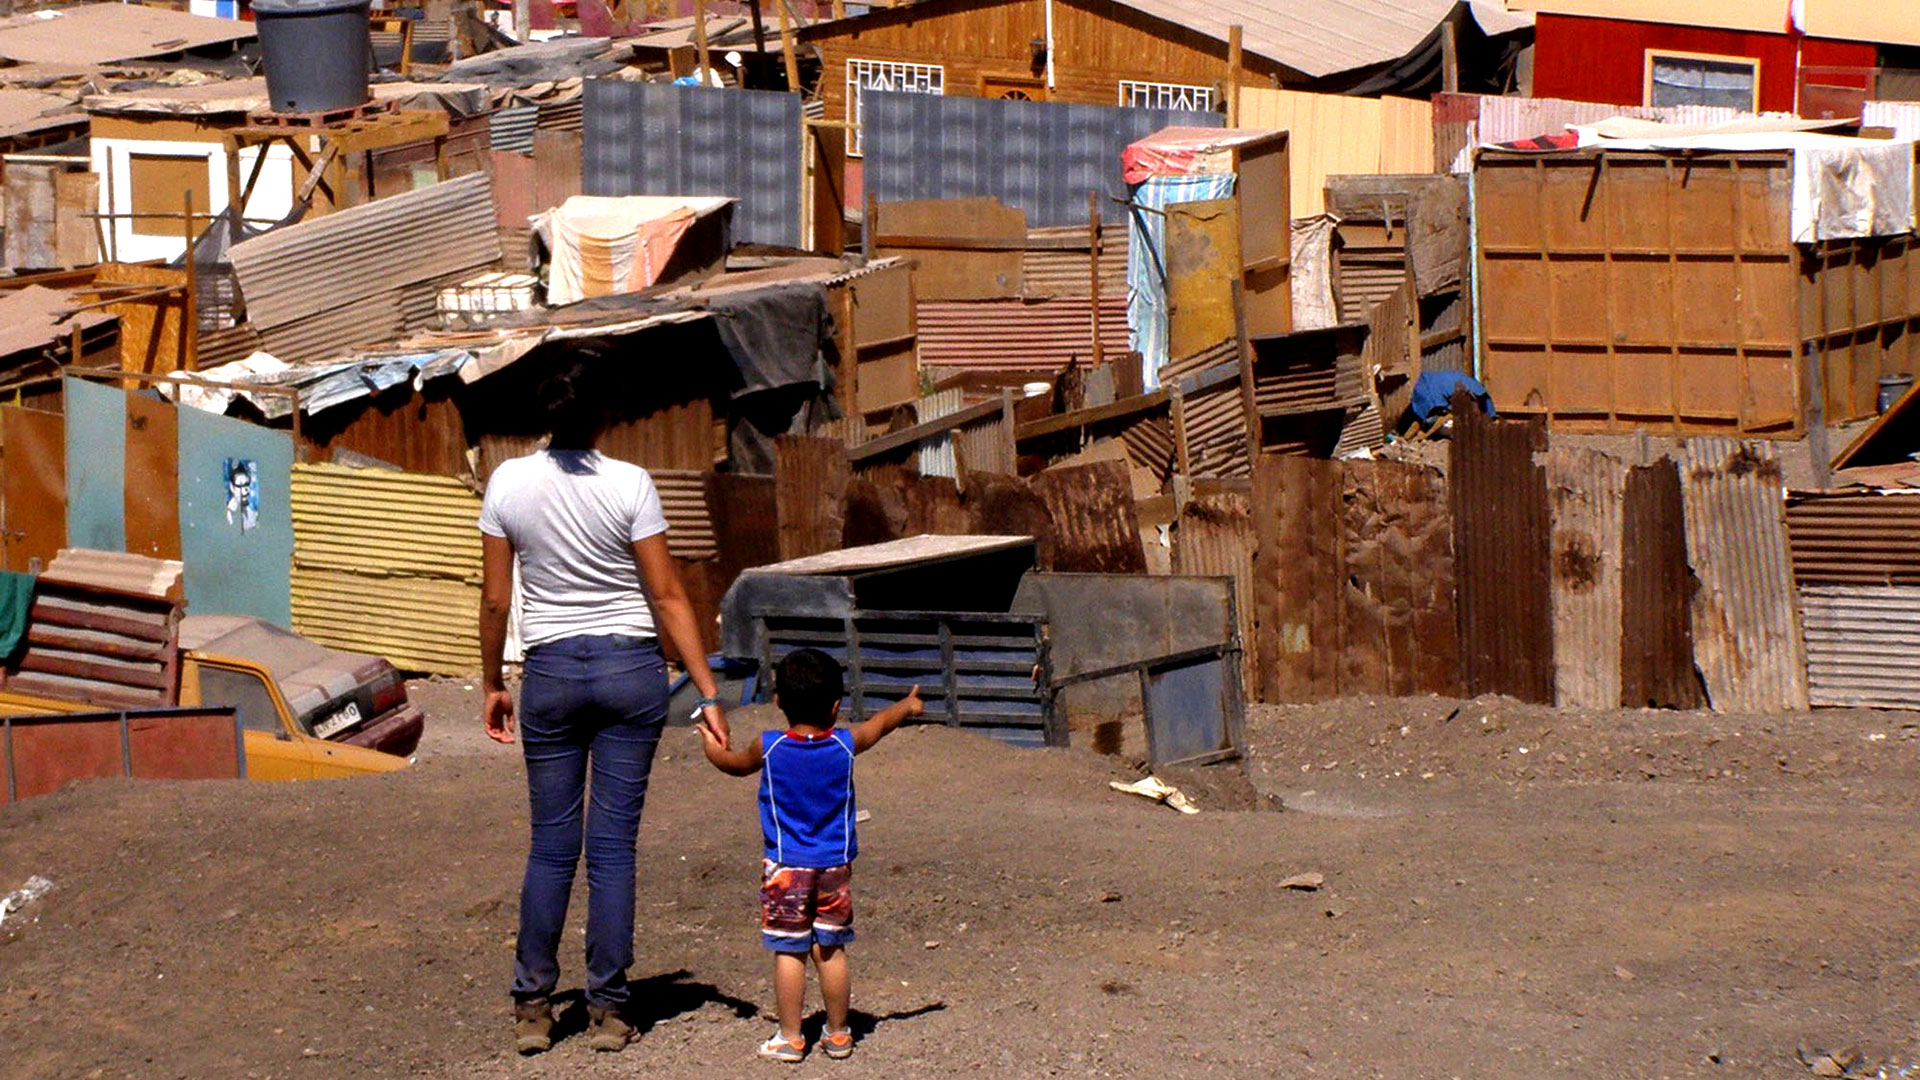 En los últimos 10 años la región creció apenas 0,8% anual, menos de la mitad que en la "década perdida" de los 80s, cuando más de 20 millones de latinoamericanos cayeron en la pobreza